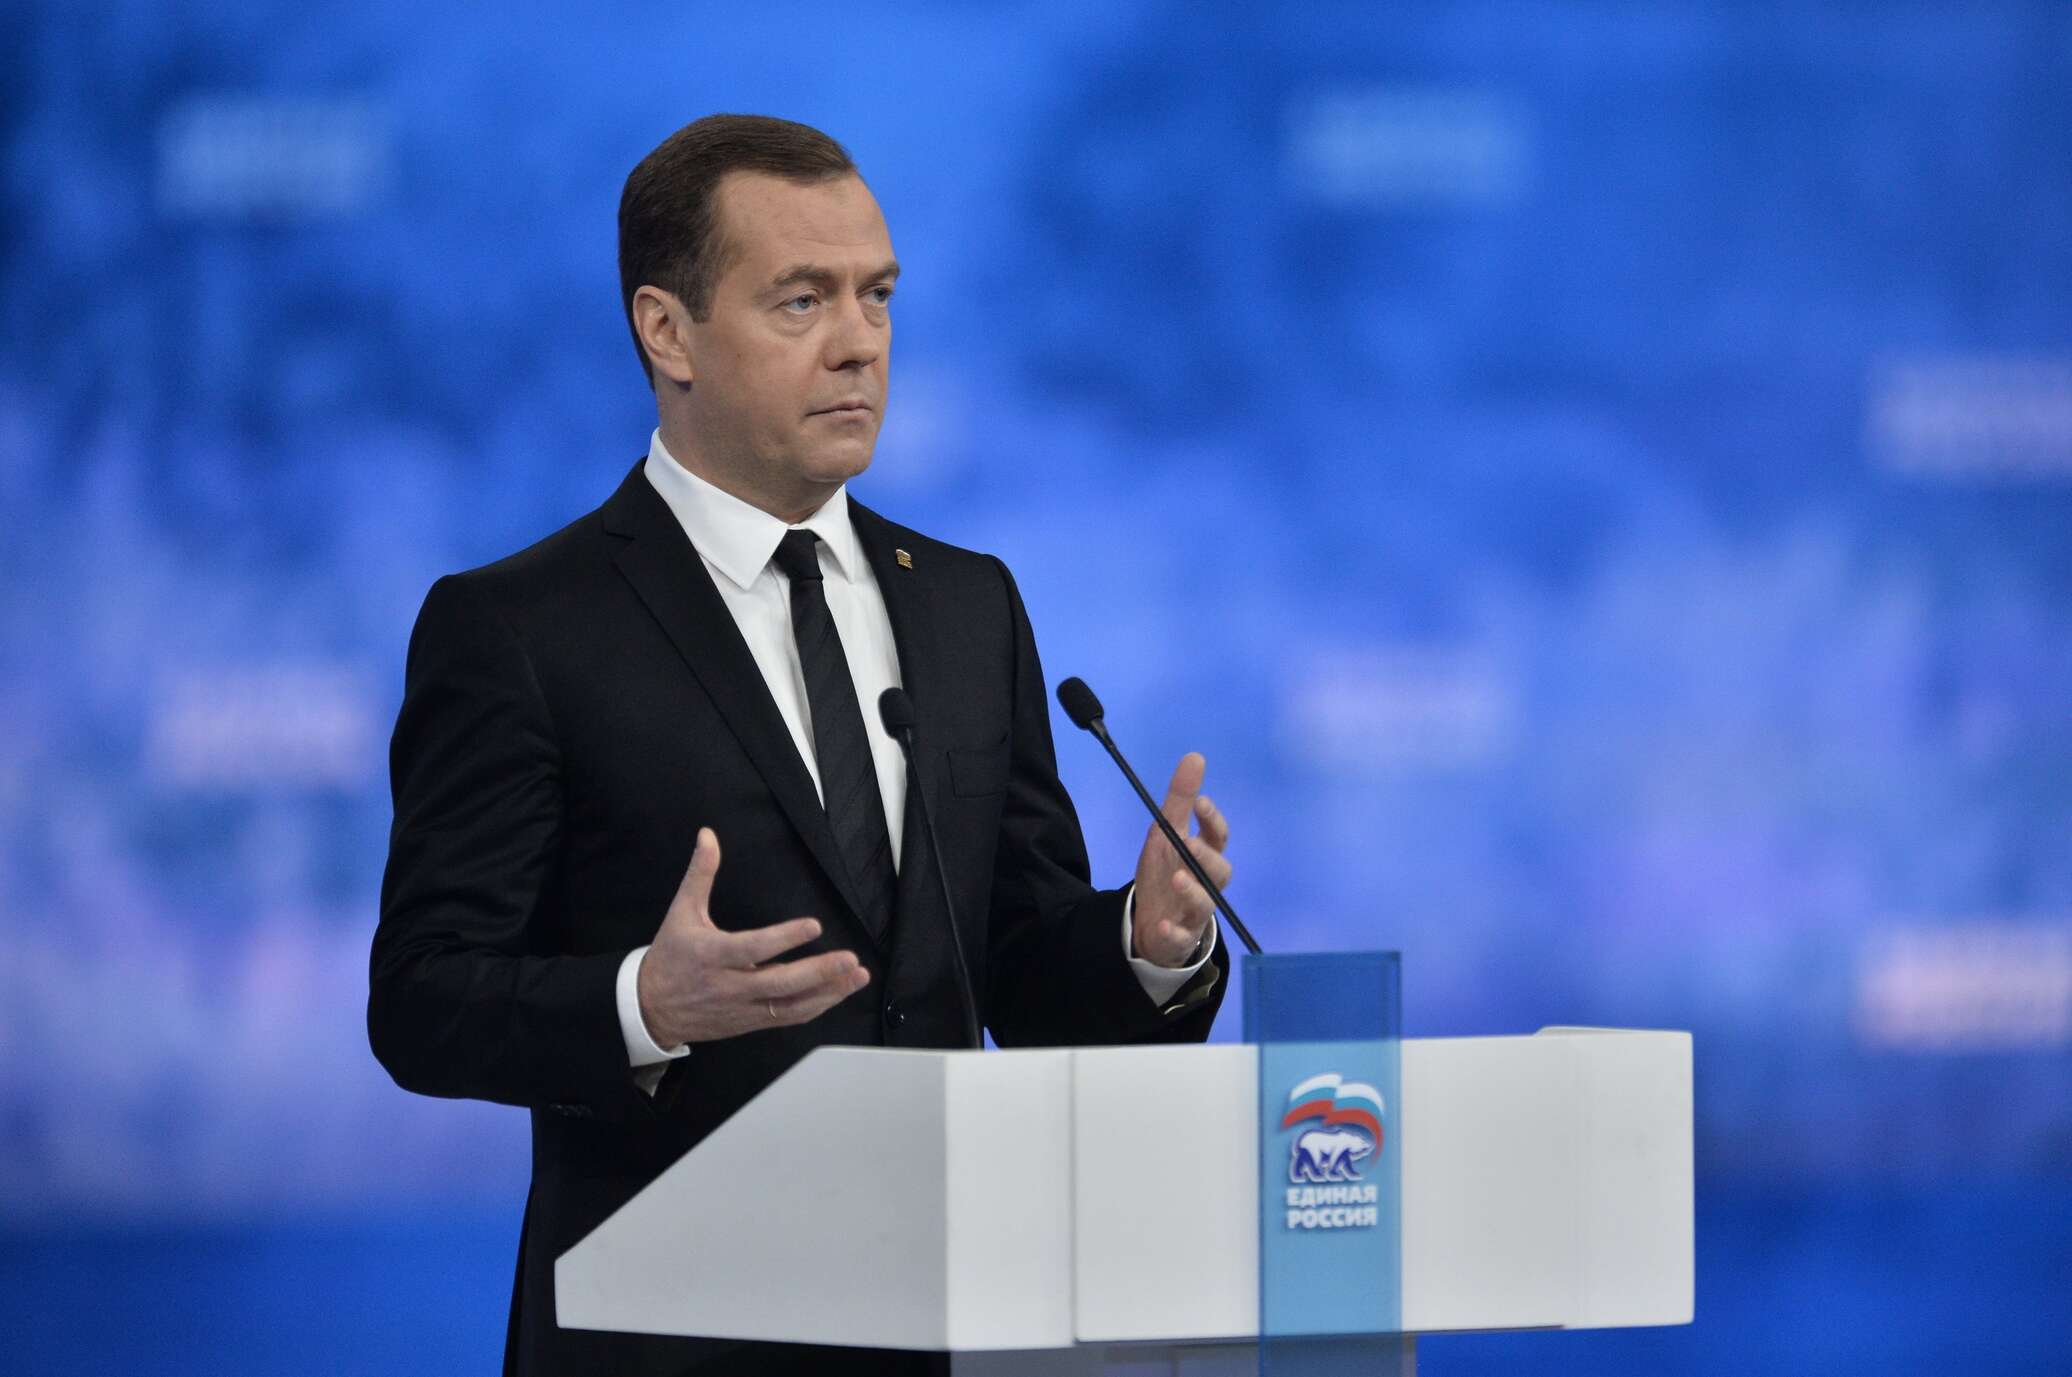 Выступление Медведева с новыми реформами. Политика последнего дня